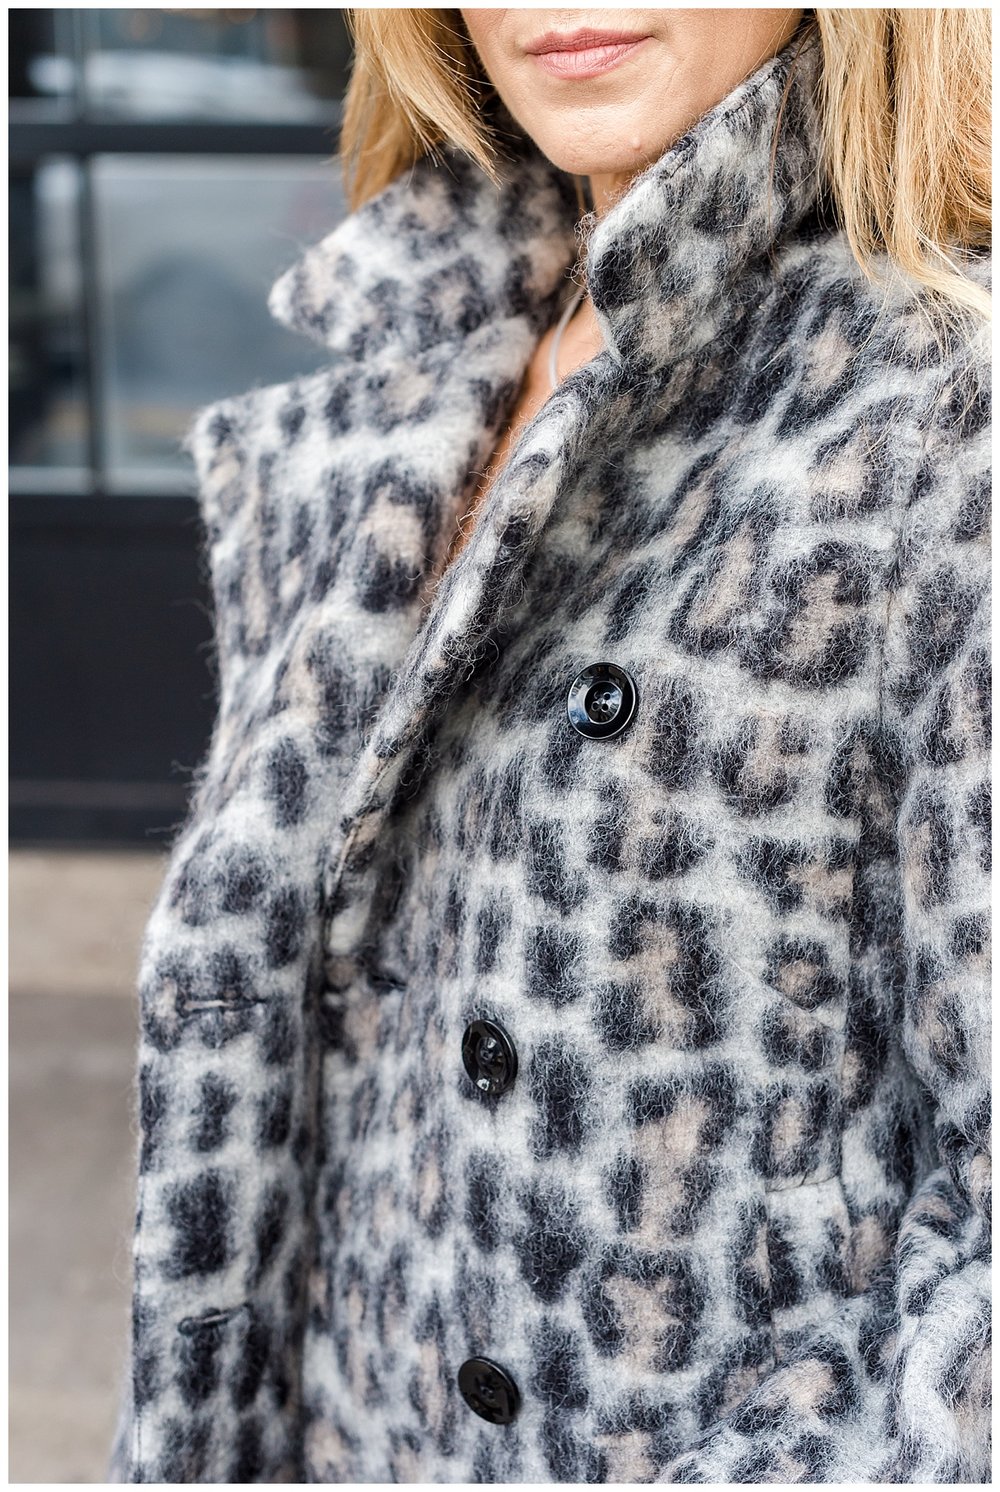 Lauren B jumpsuit and cheetah coat_1667.jpg